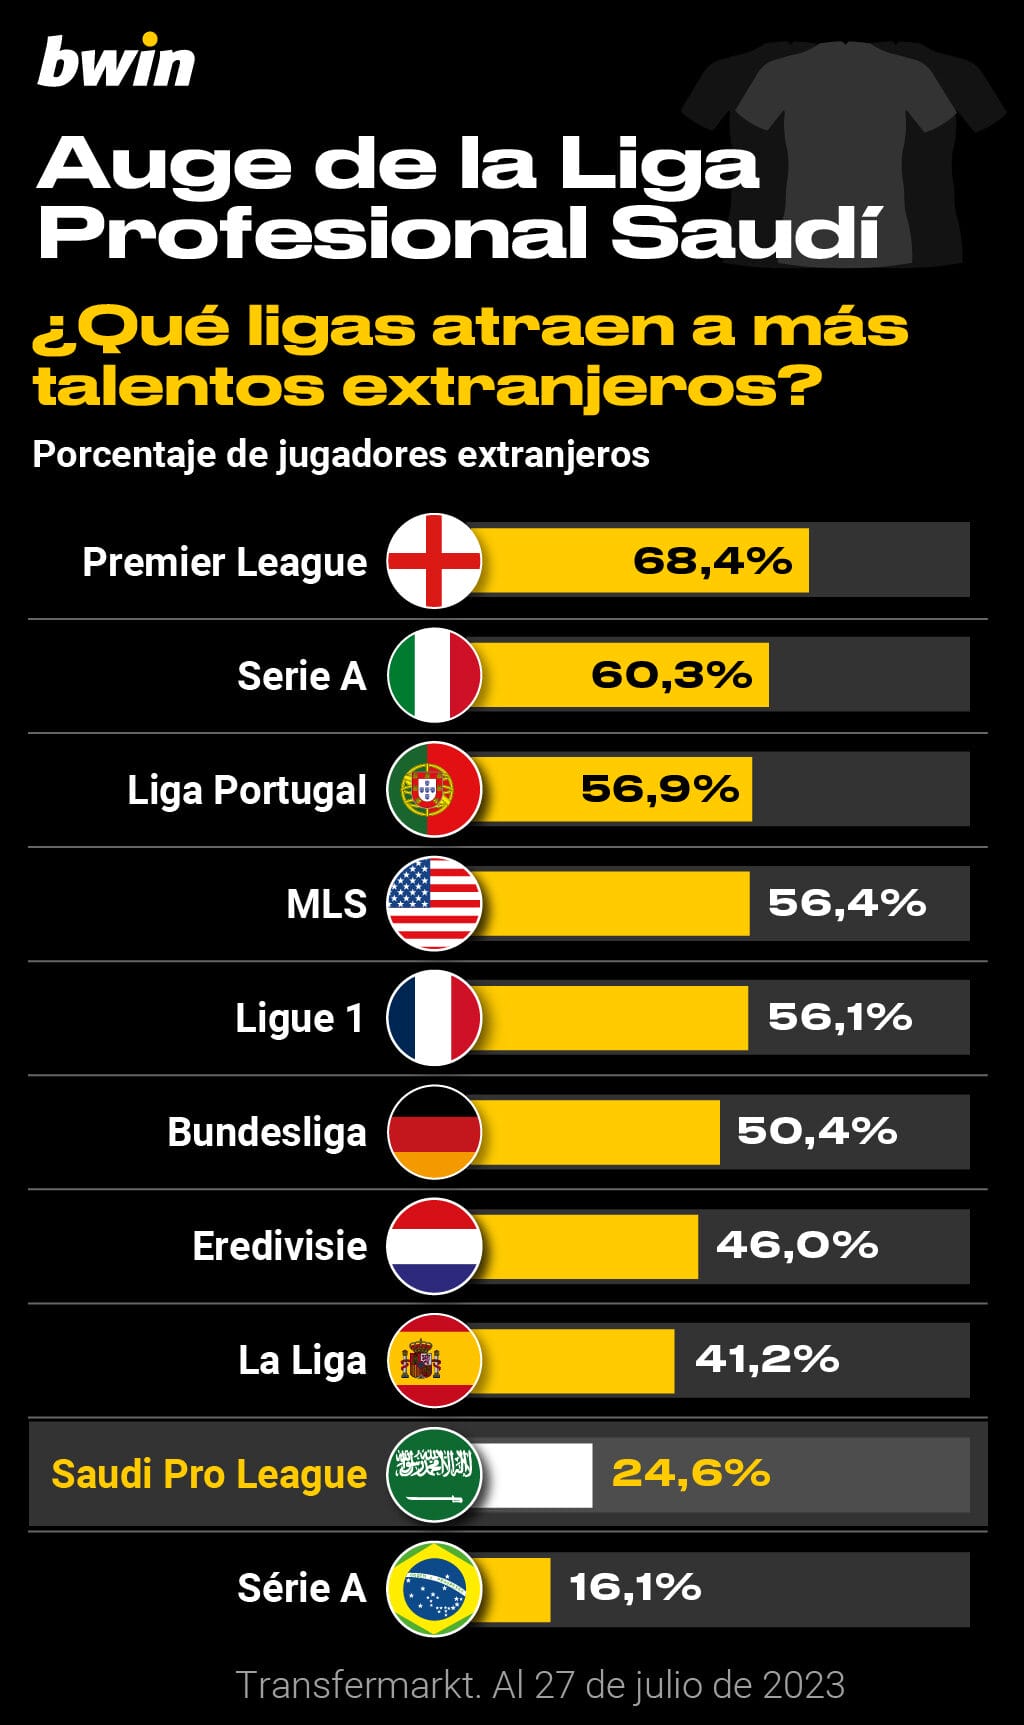 Qué ligas atraen más talento extranjero